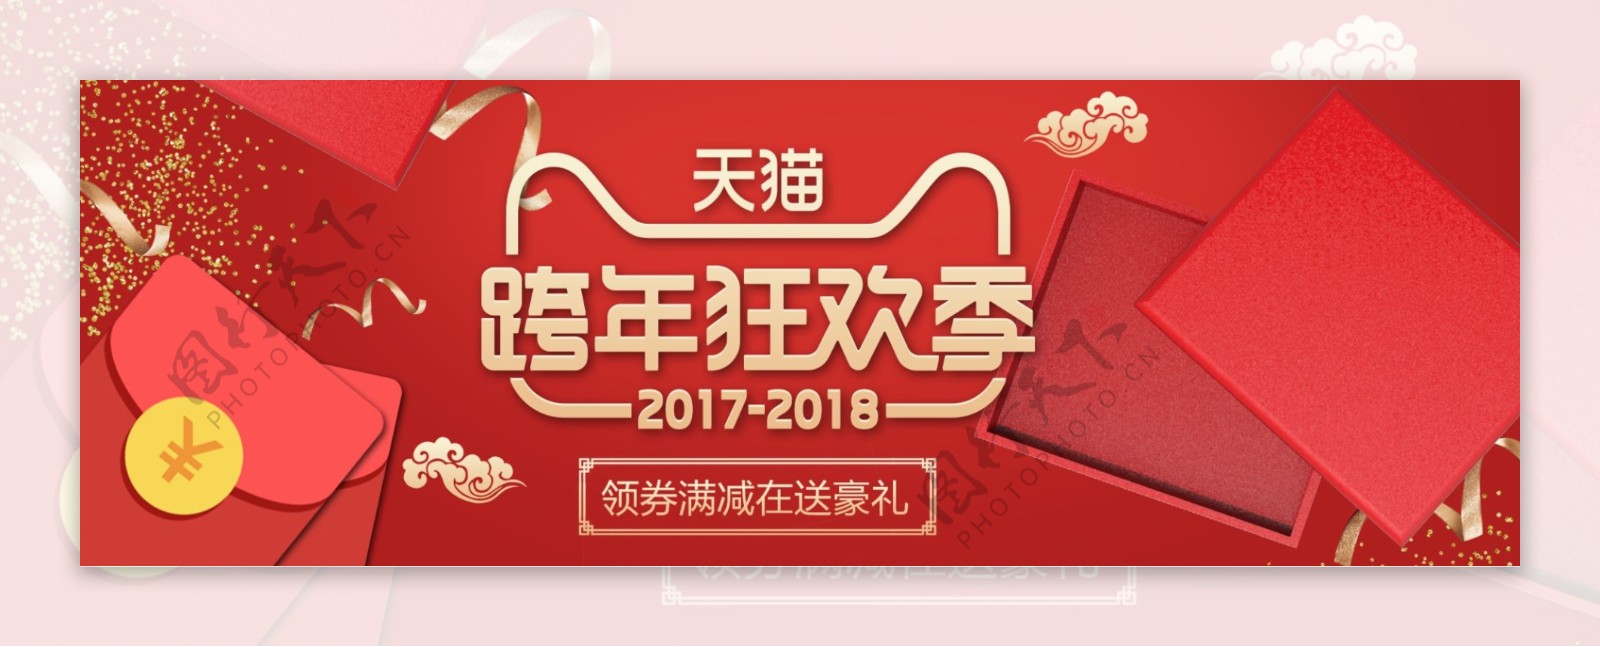 电商淘宝跨年狂欢新年红色礼盒数码海报